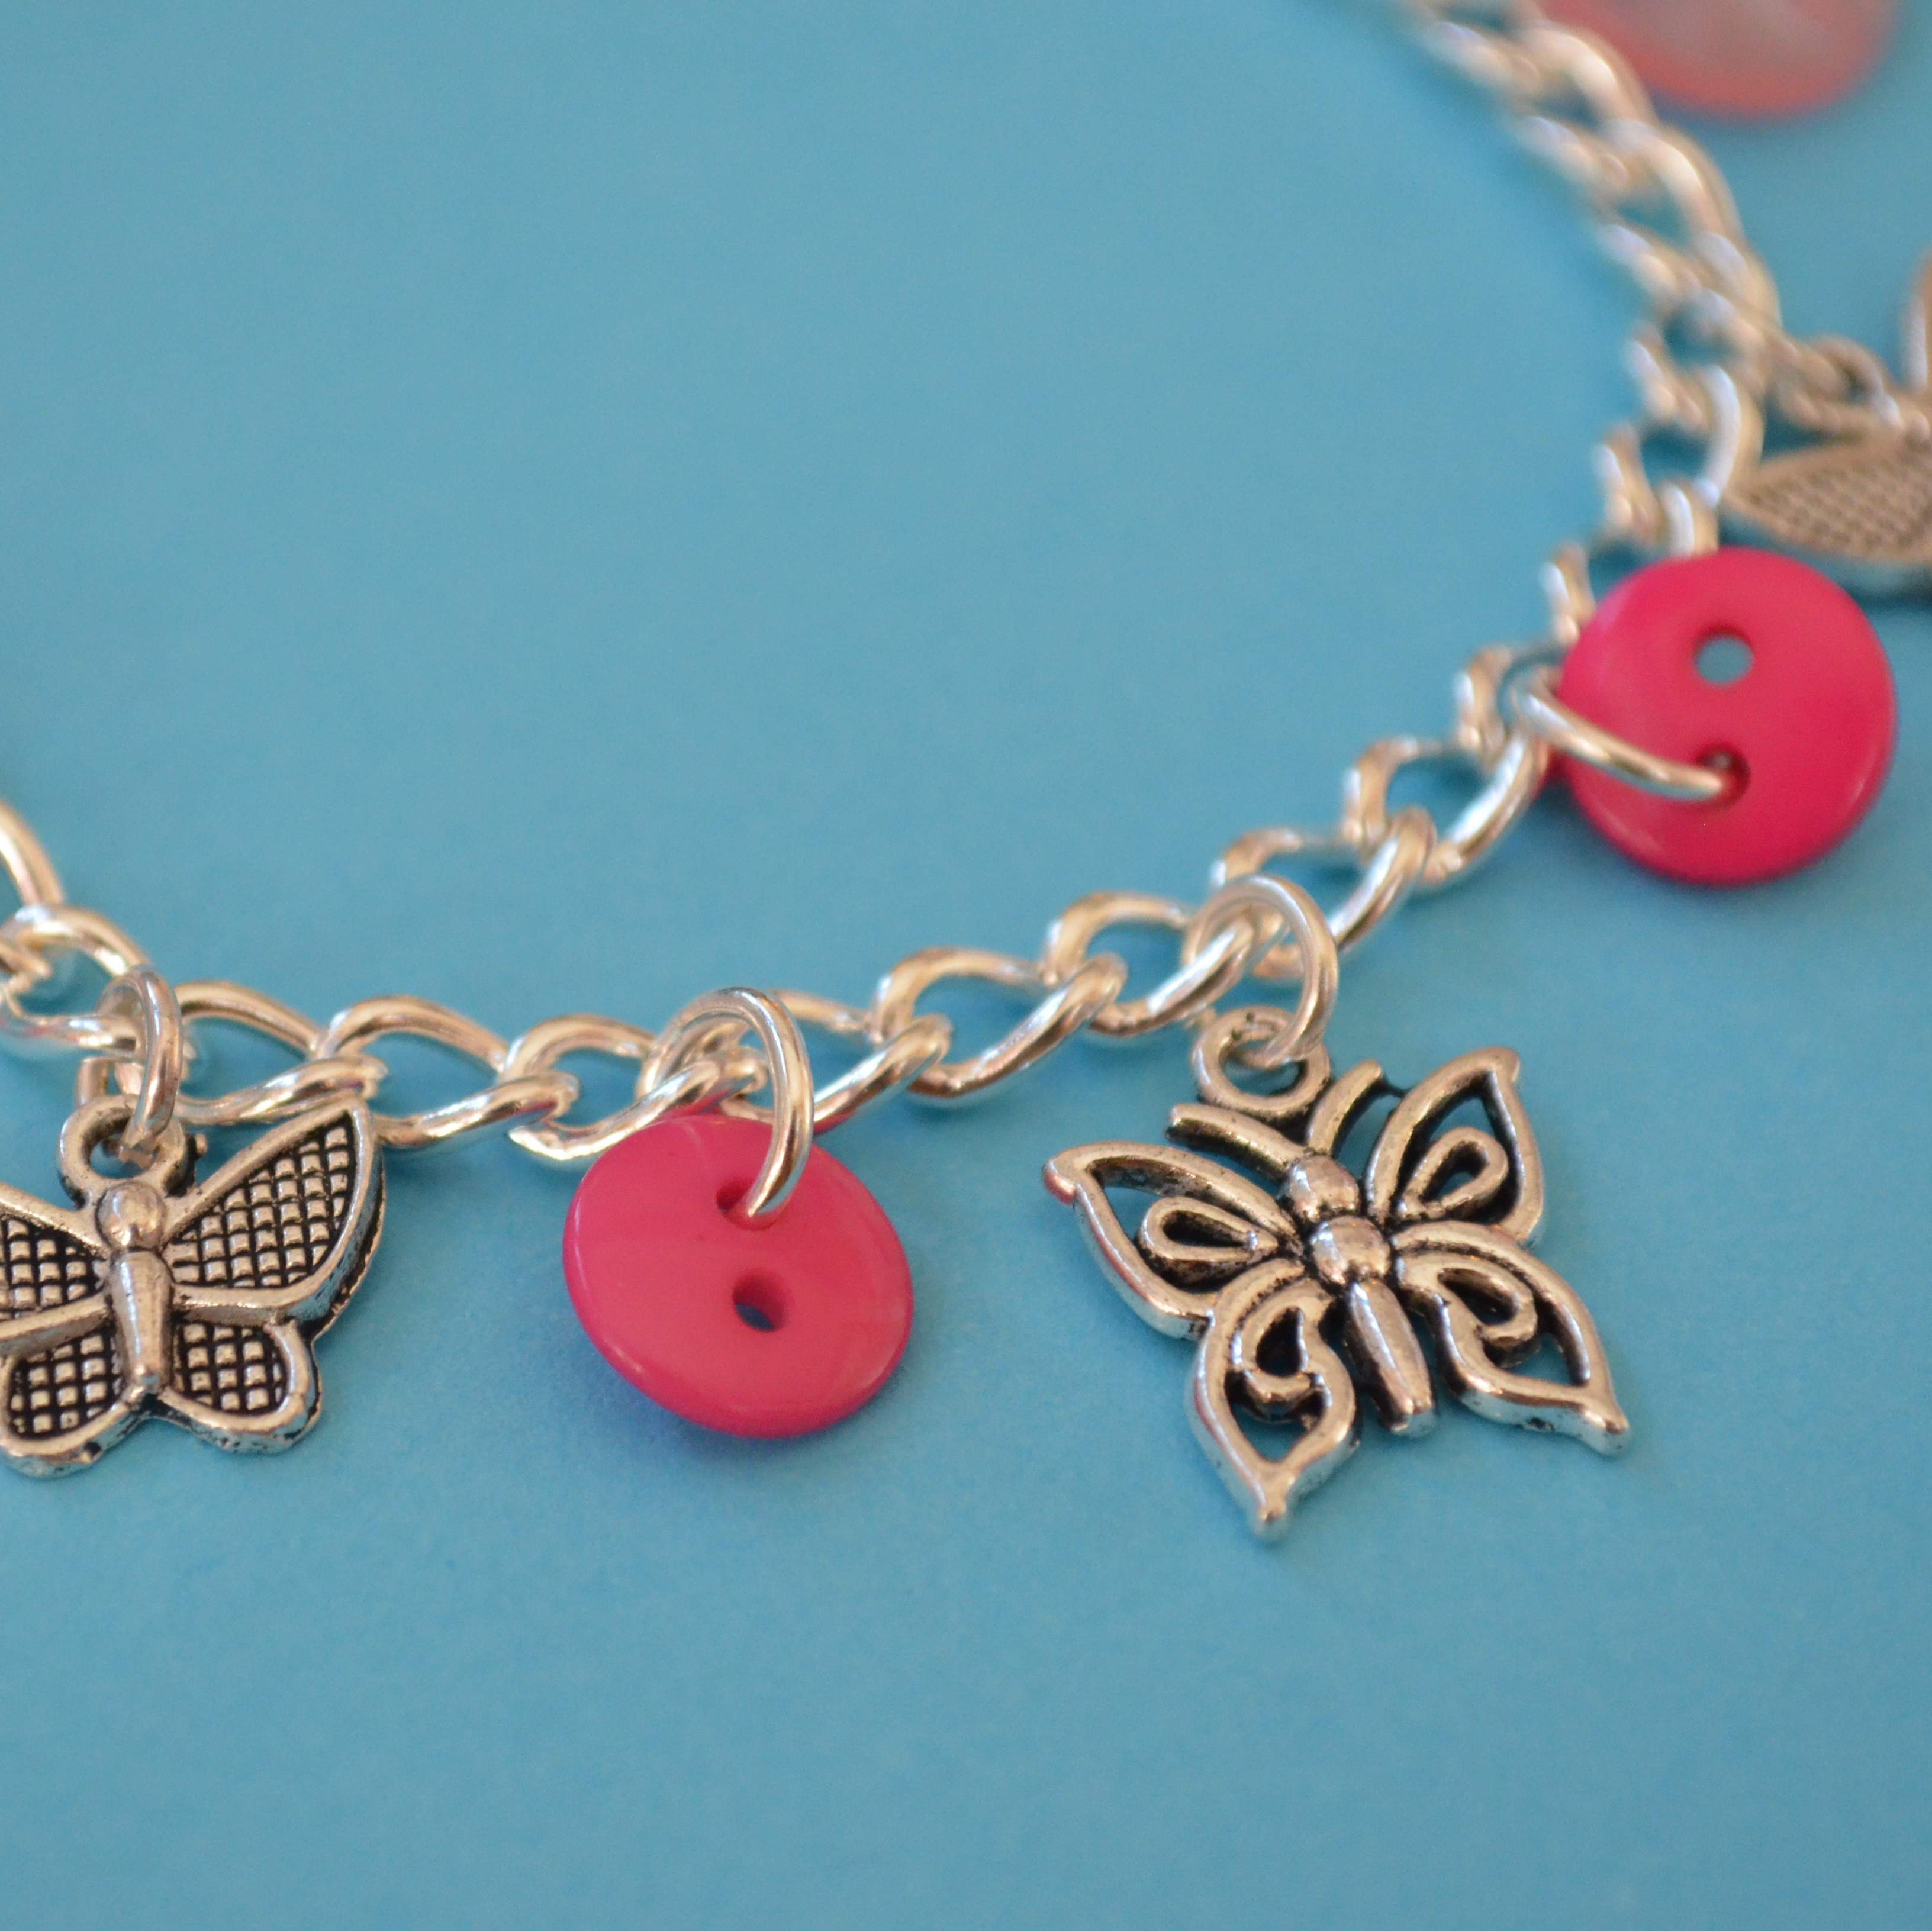 Butterfly Child’s Button Charm Bracelet